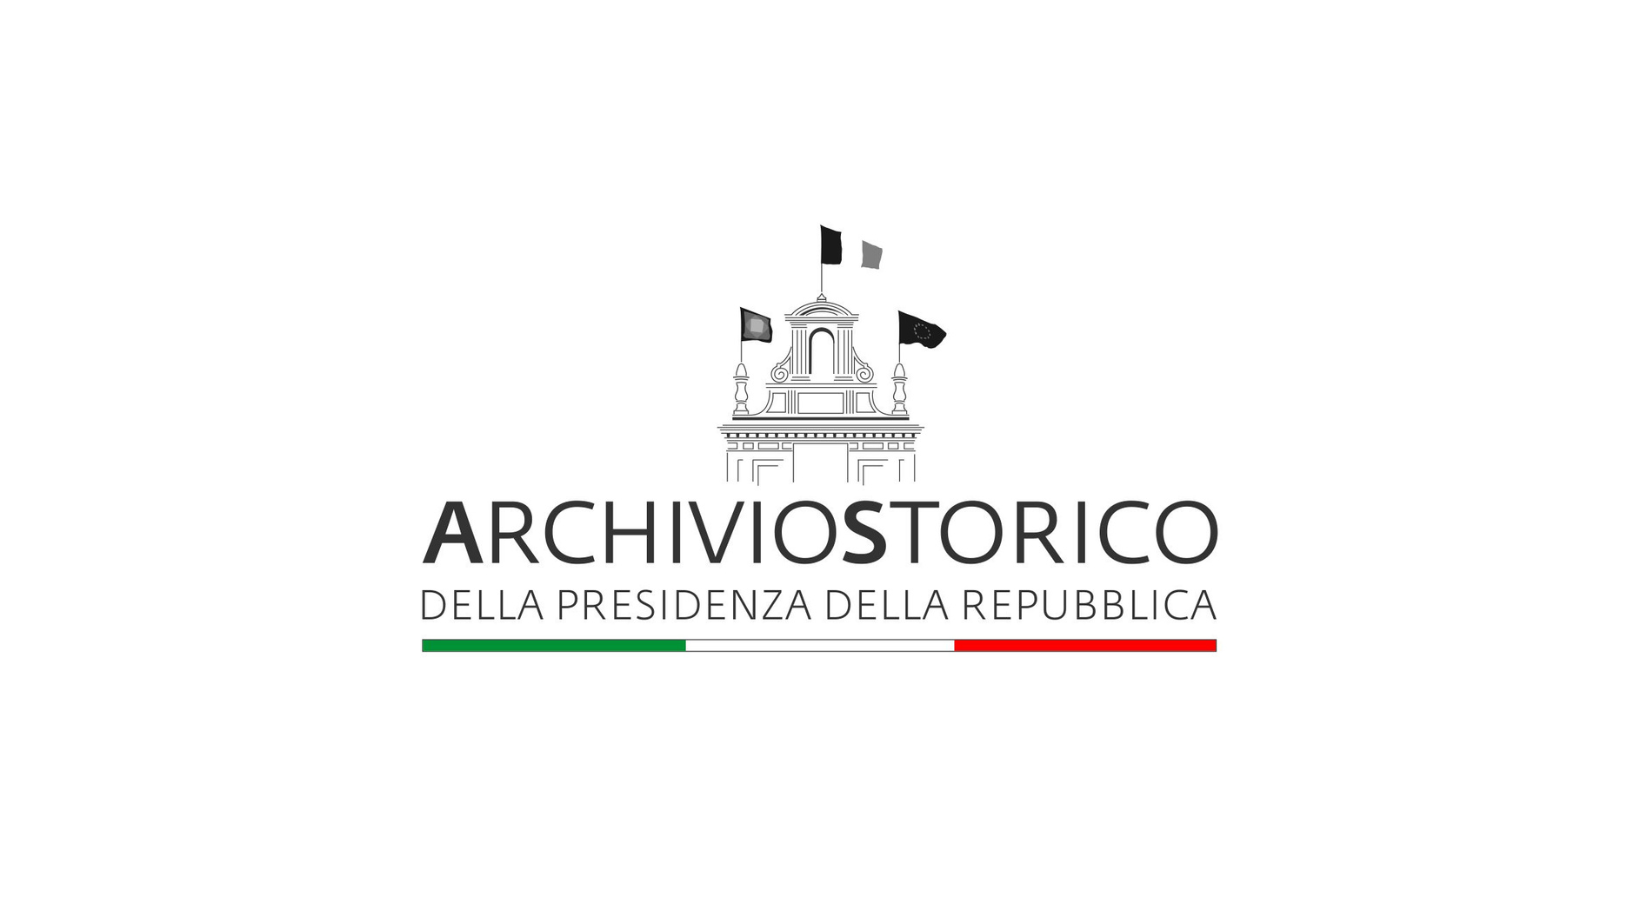 Immagine di copertina con sfondo bianco e logo dell'Archivio Storico della Presidenza della Repubblica, con sede a Roma